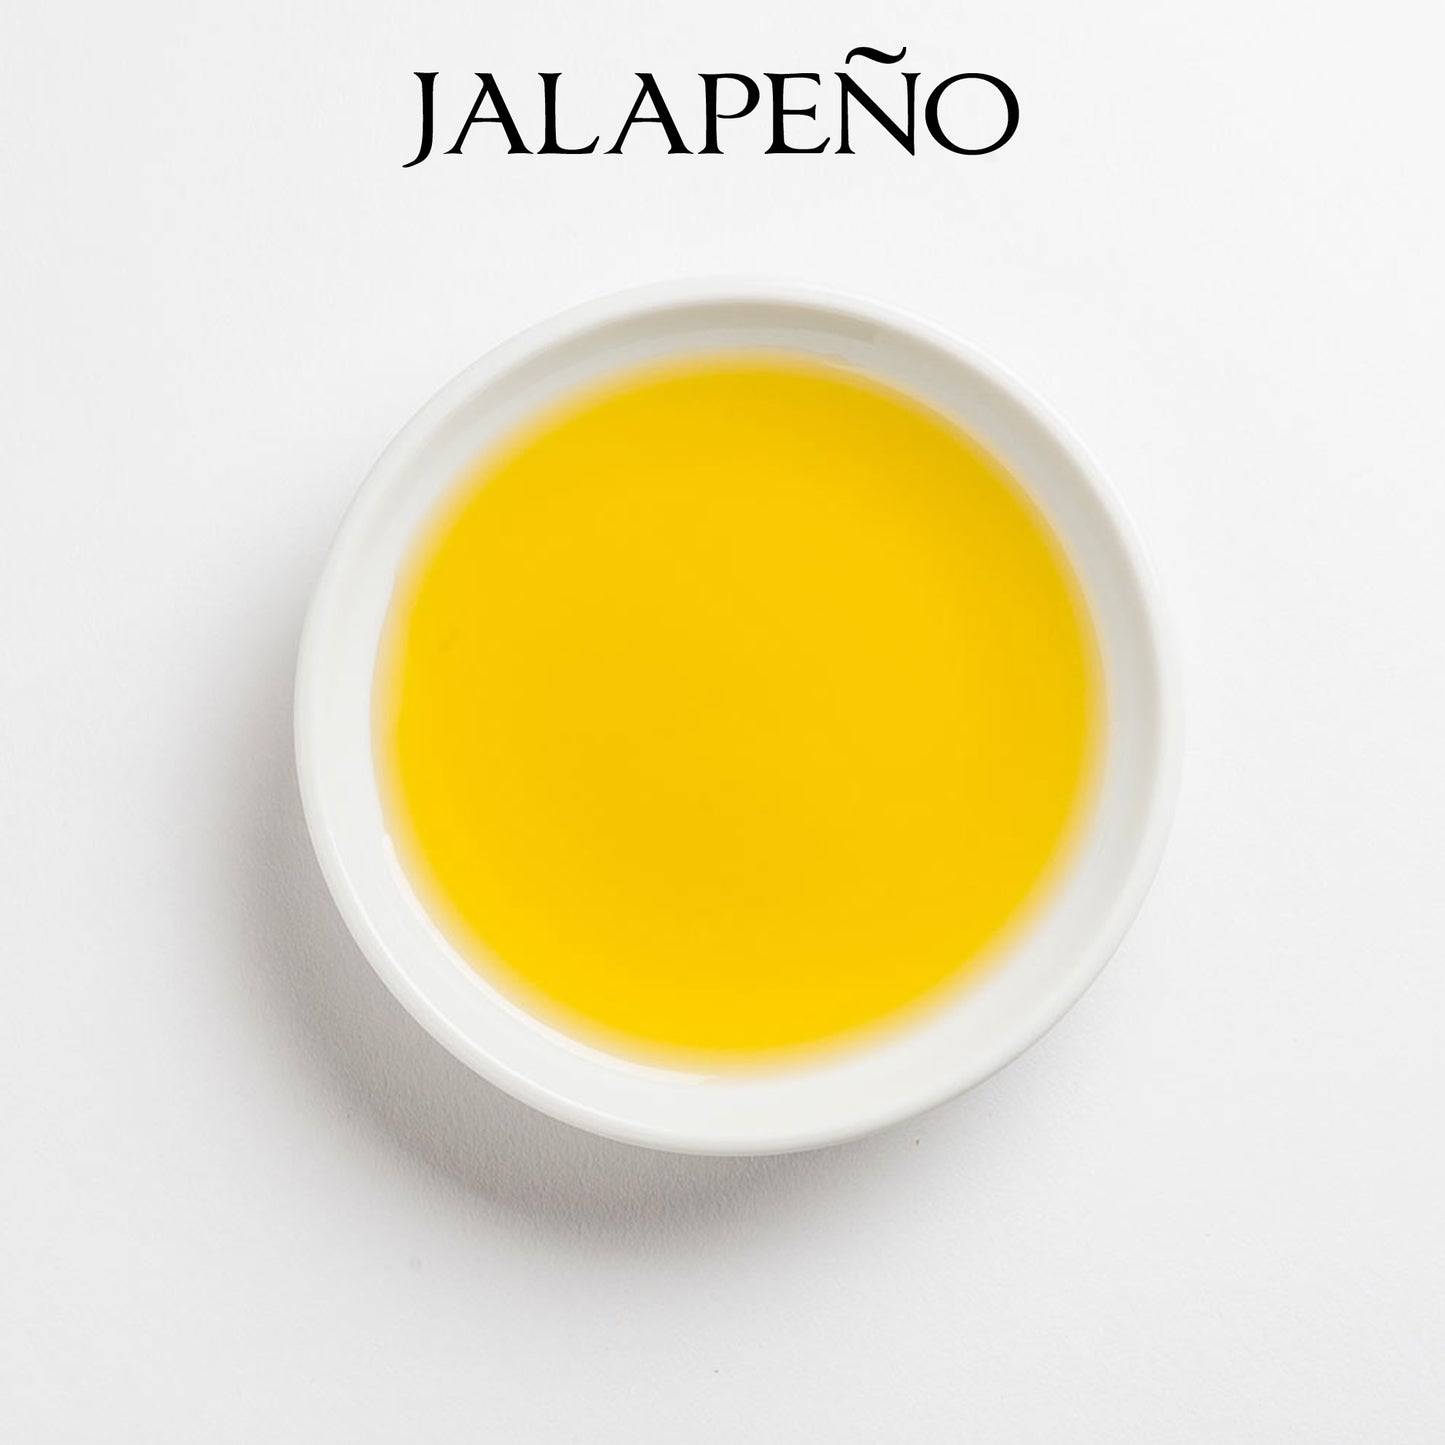 JALAPEÑO Infused Olive Oil - California